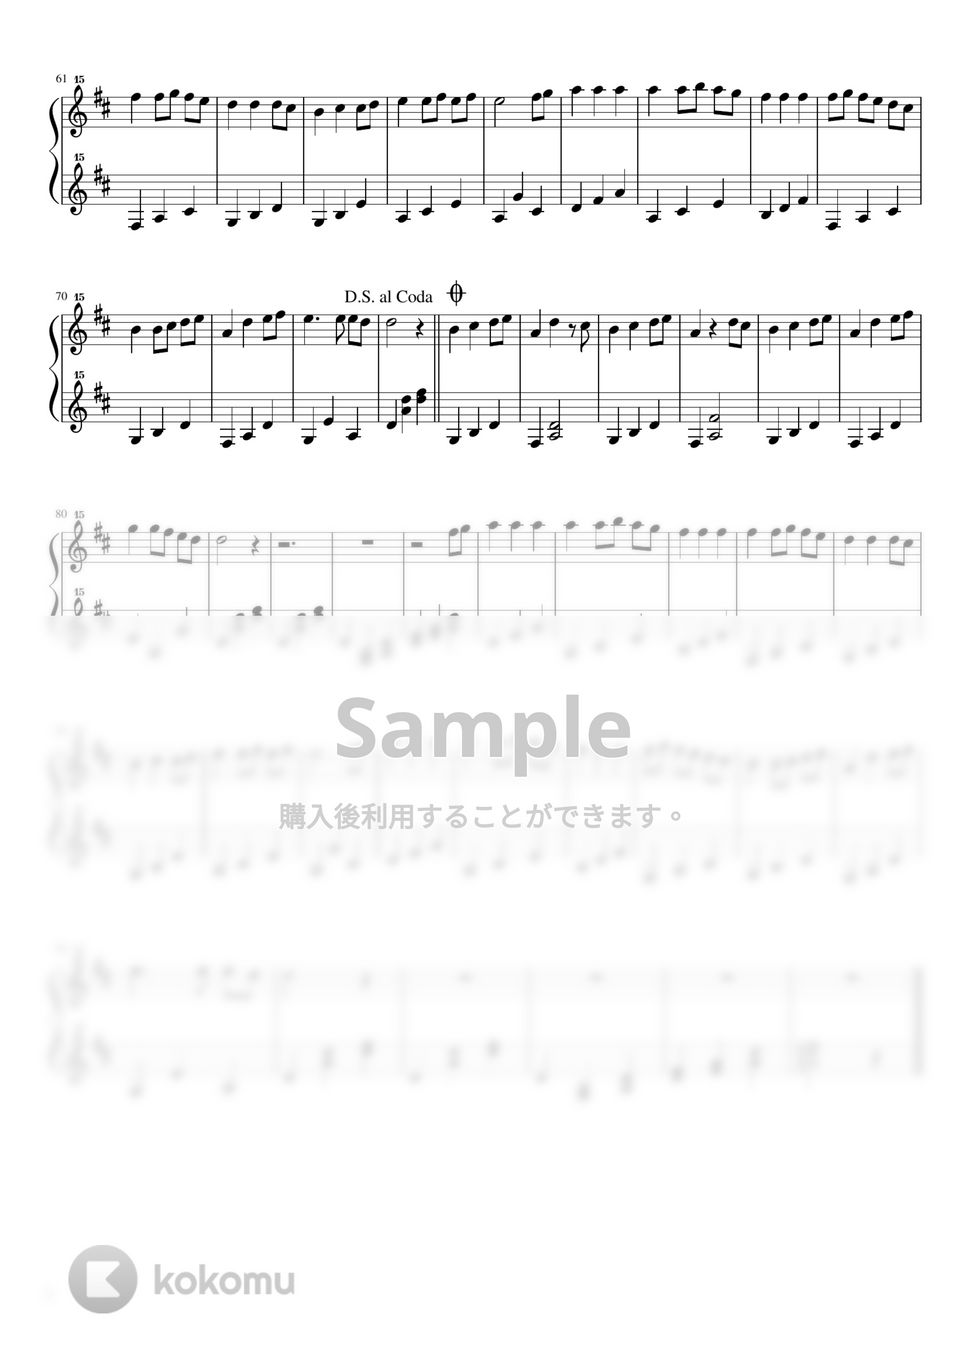 木村弓 - いつも何度でも (千と千尋の神隠し / トイピアノ / 32鍵盤) by 川西三裕